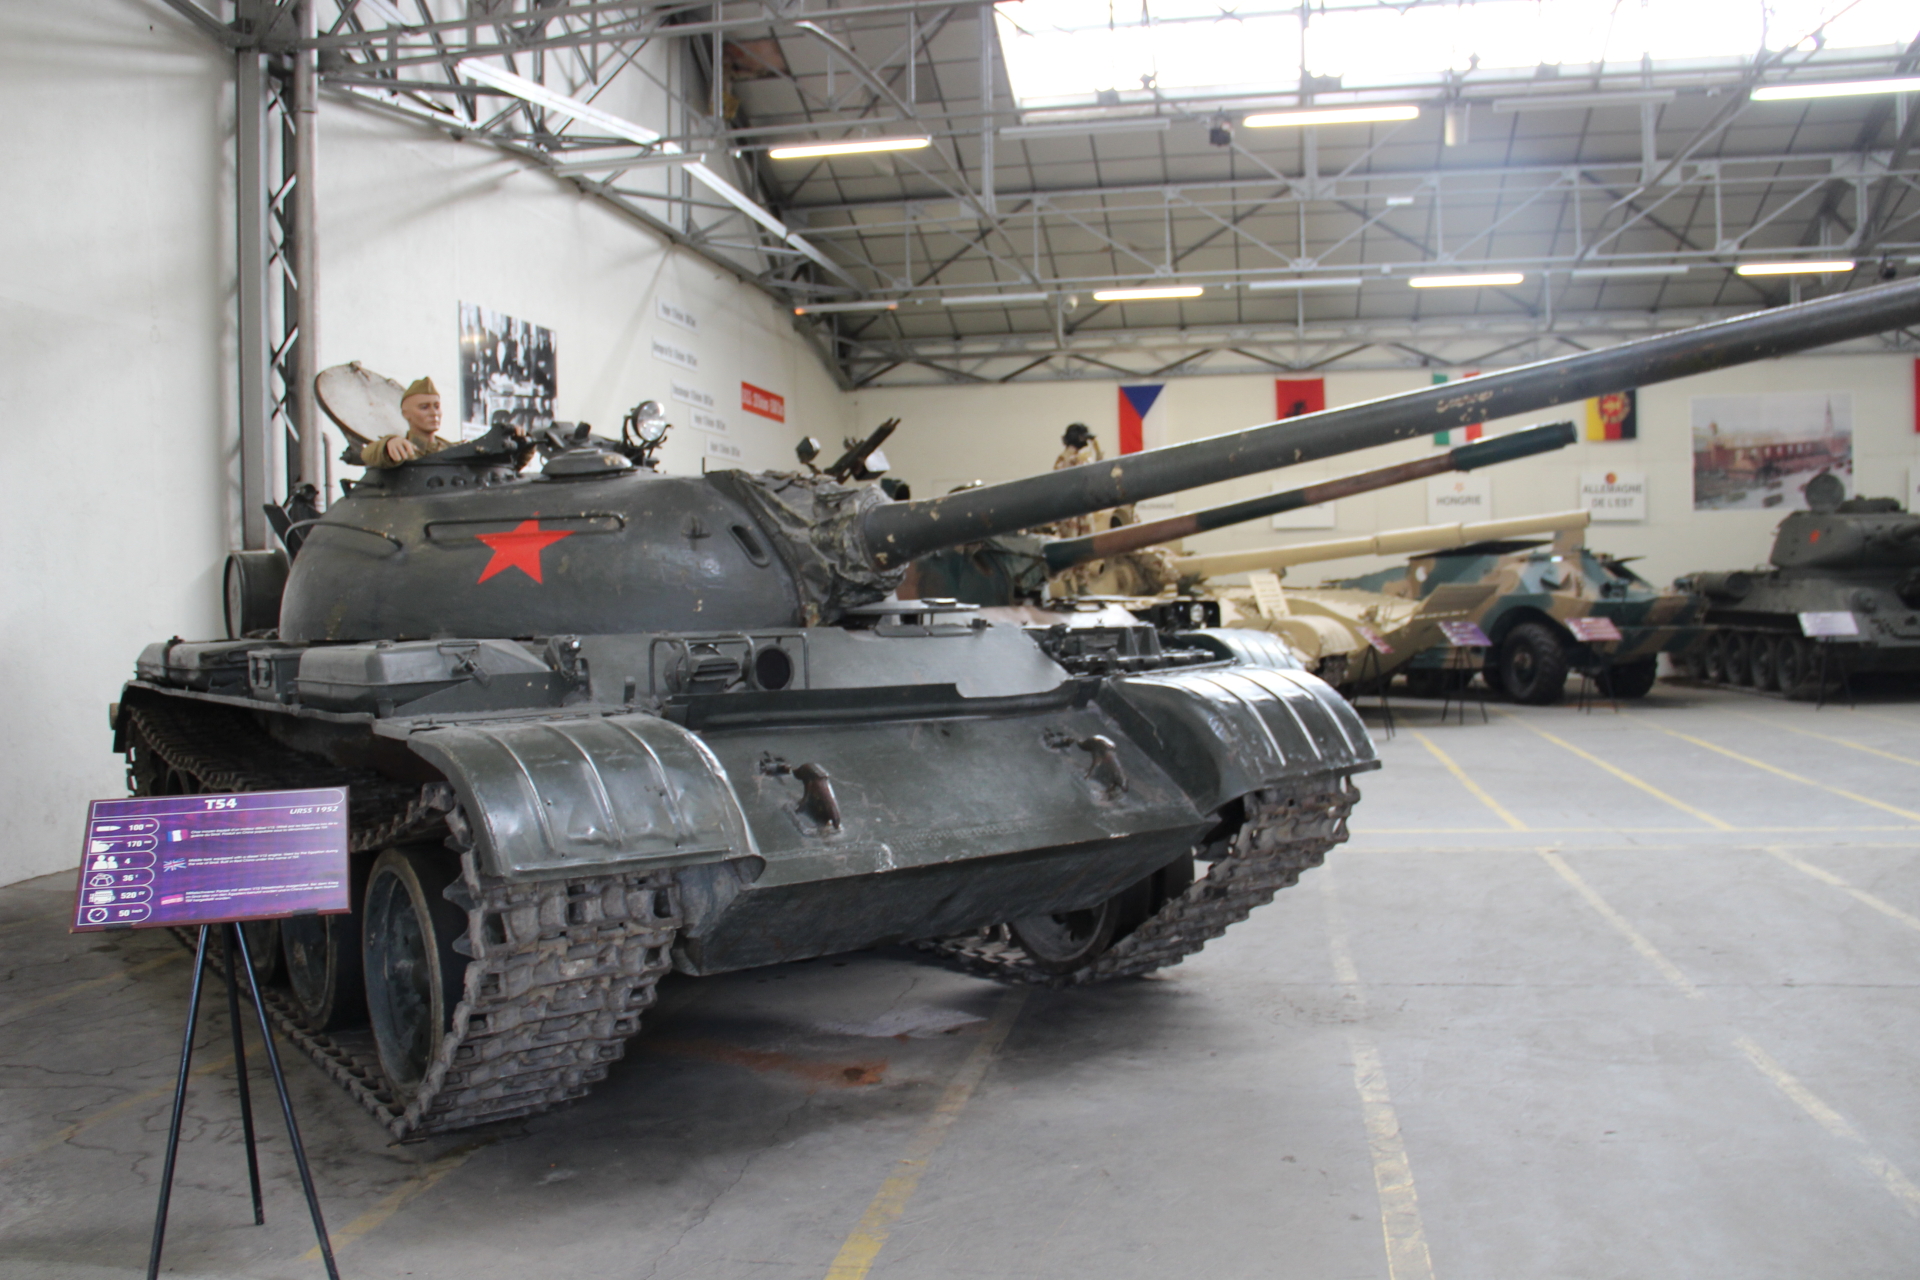 Saumur Tank Museum (Part 4) - The Armored Patrol